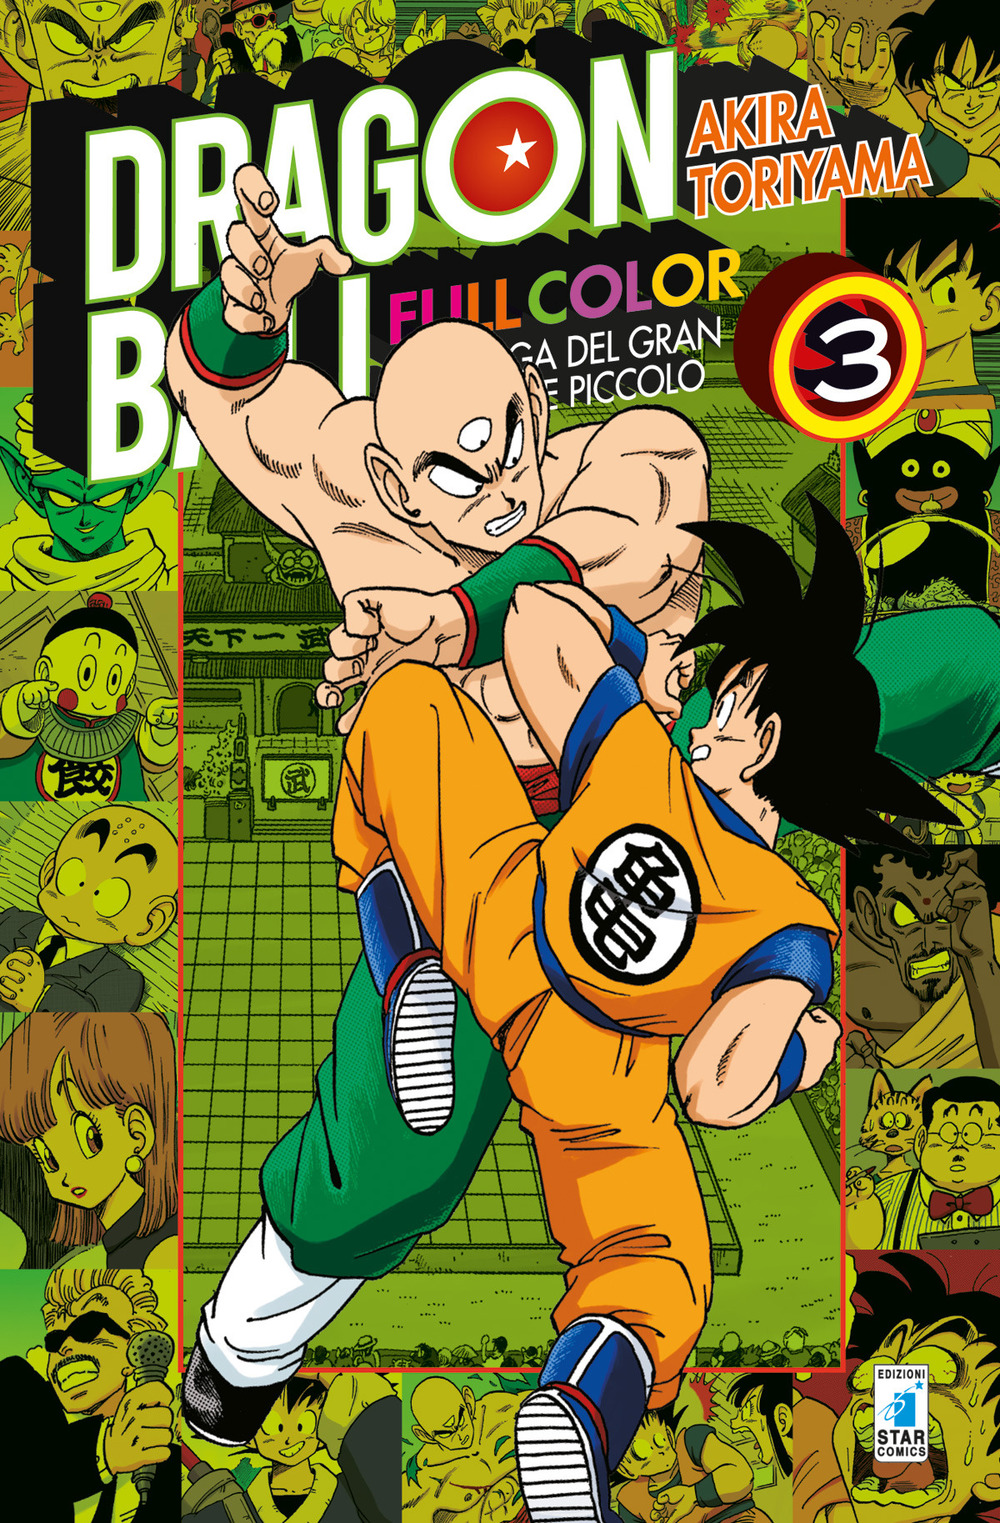 La saga del gran demone Piccolo. Dragon Ball full color. Vol. 3